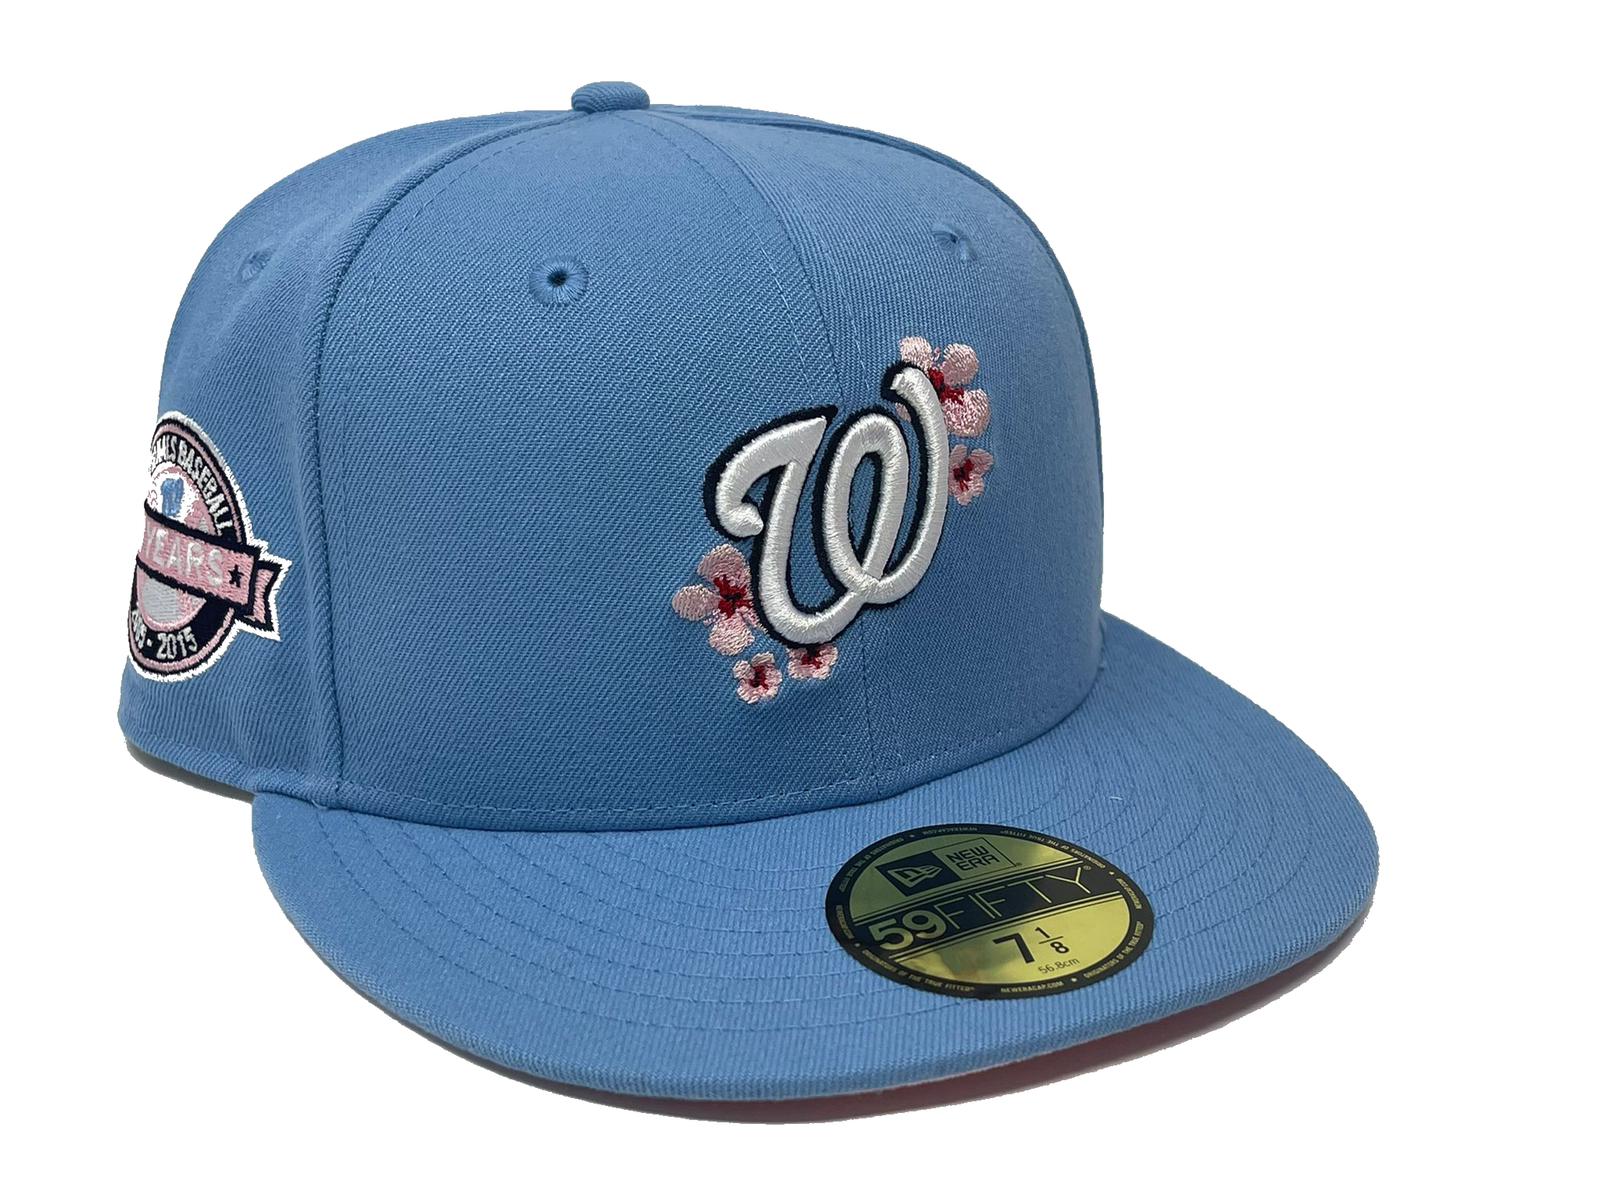 Nats DC Baseball Cap, My Washington Nationals blue DC baseb…